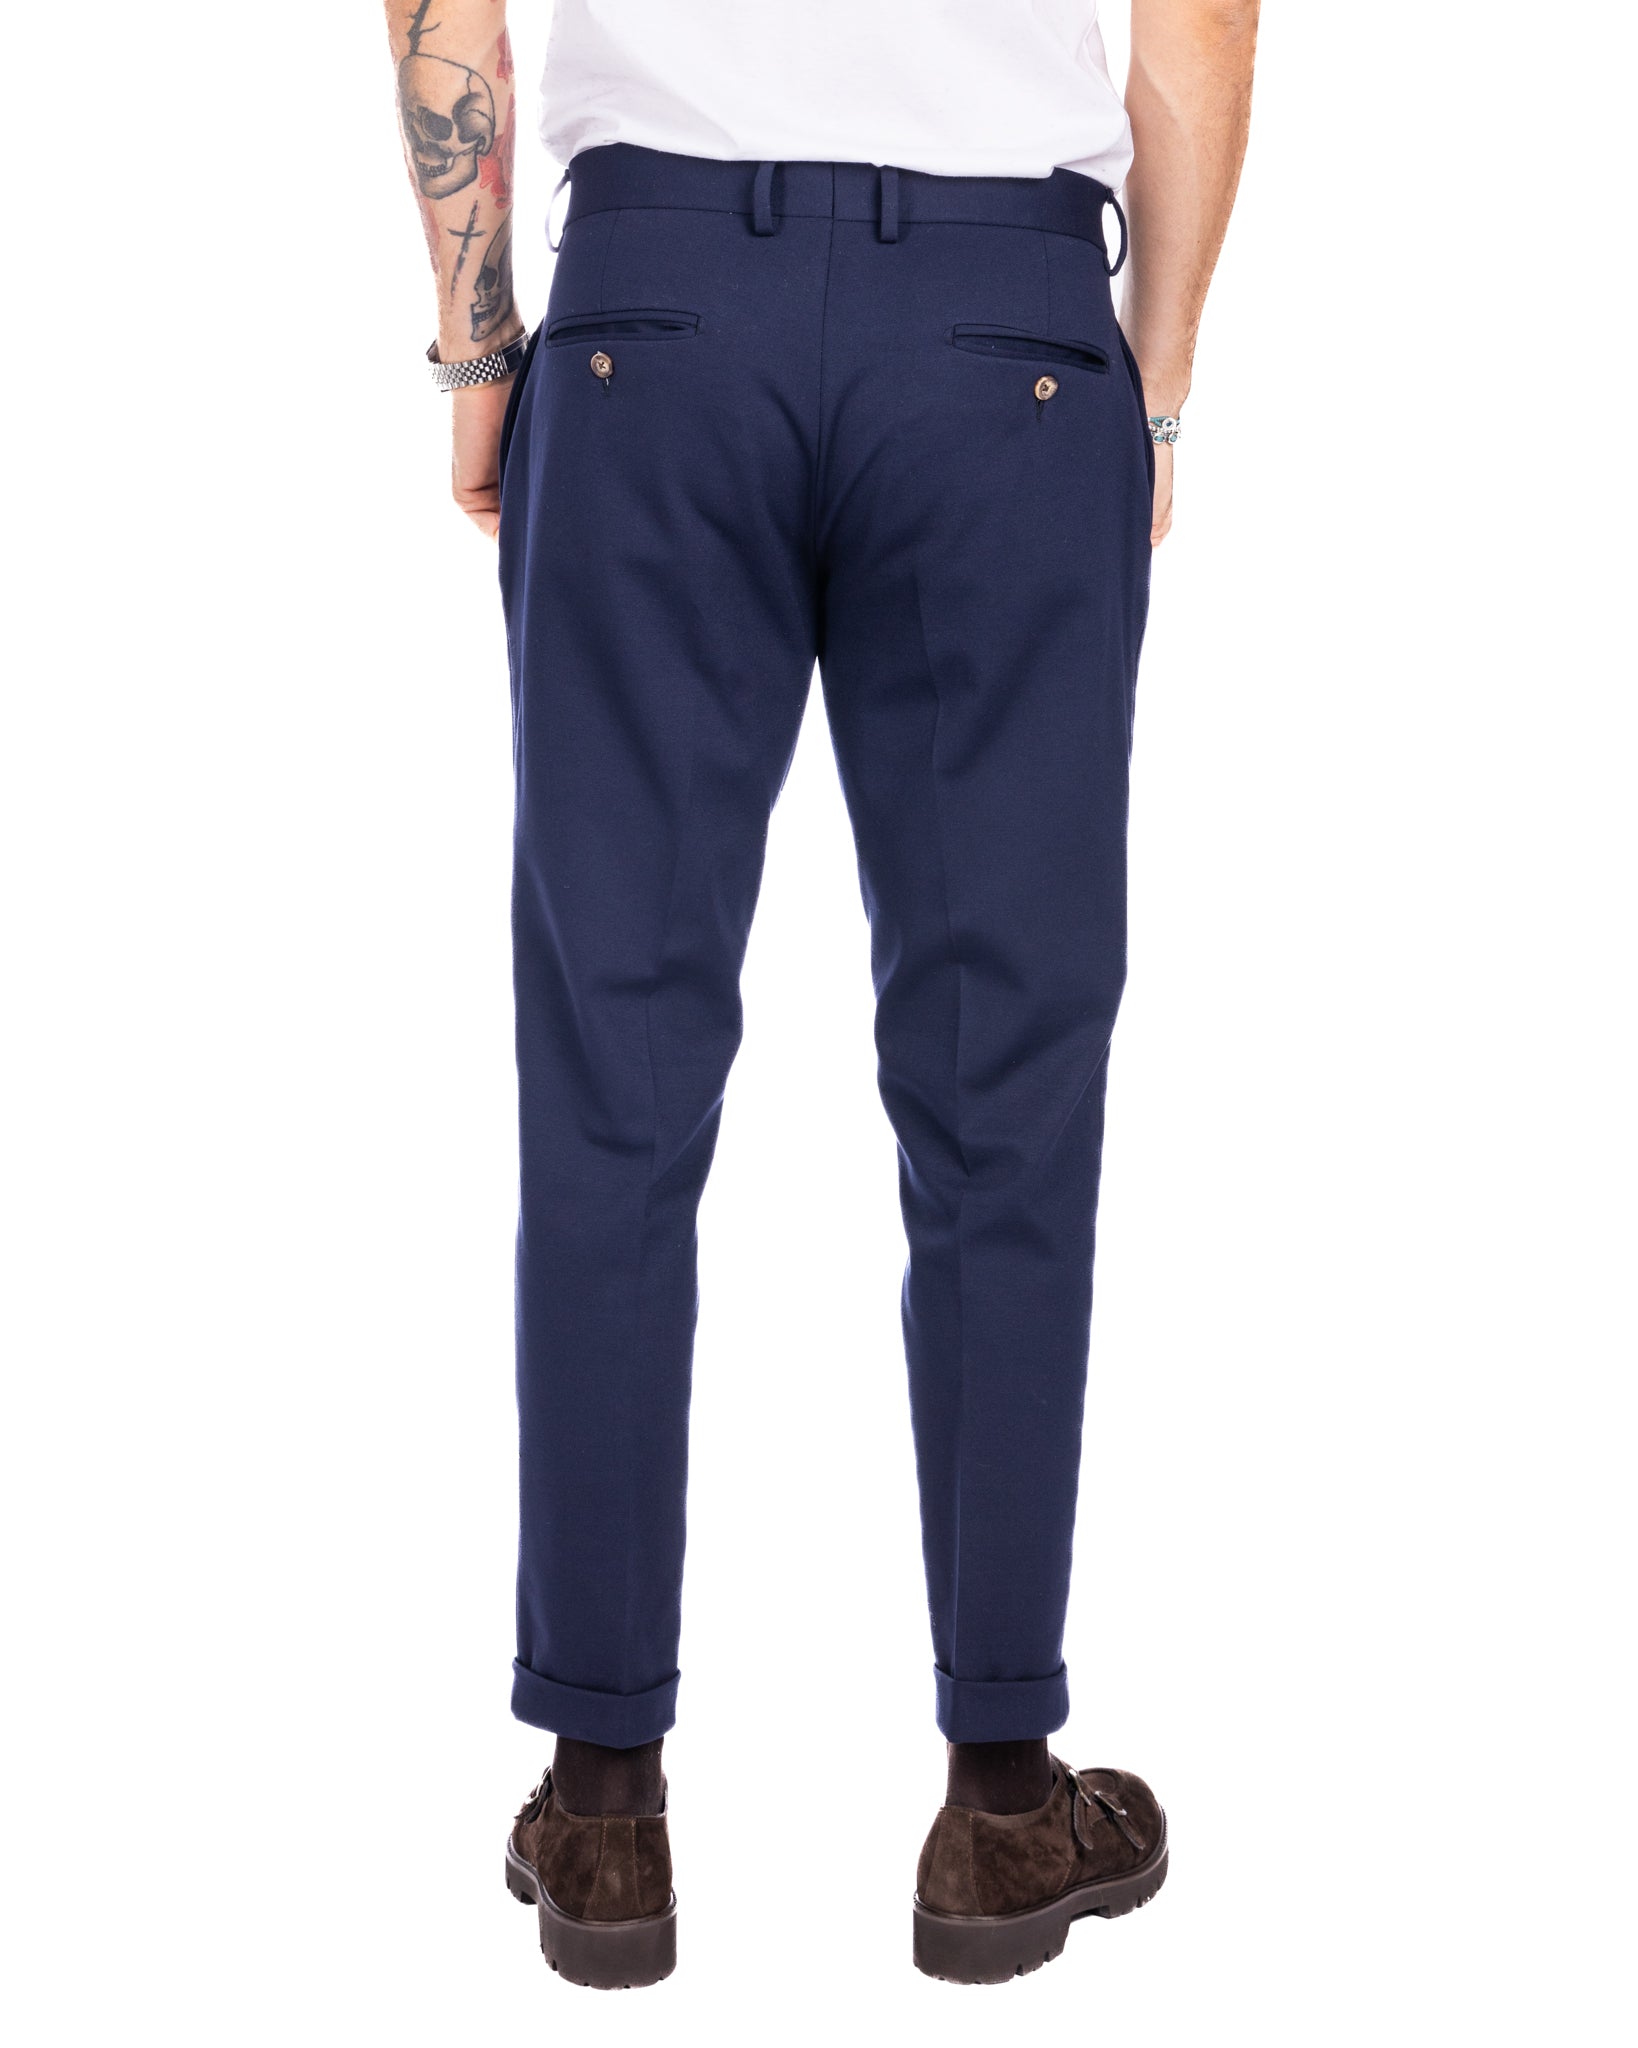 Milano - pantalon basique bleu